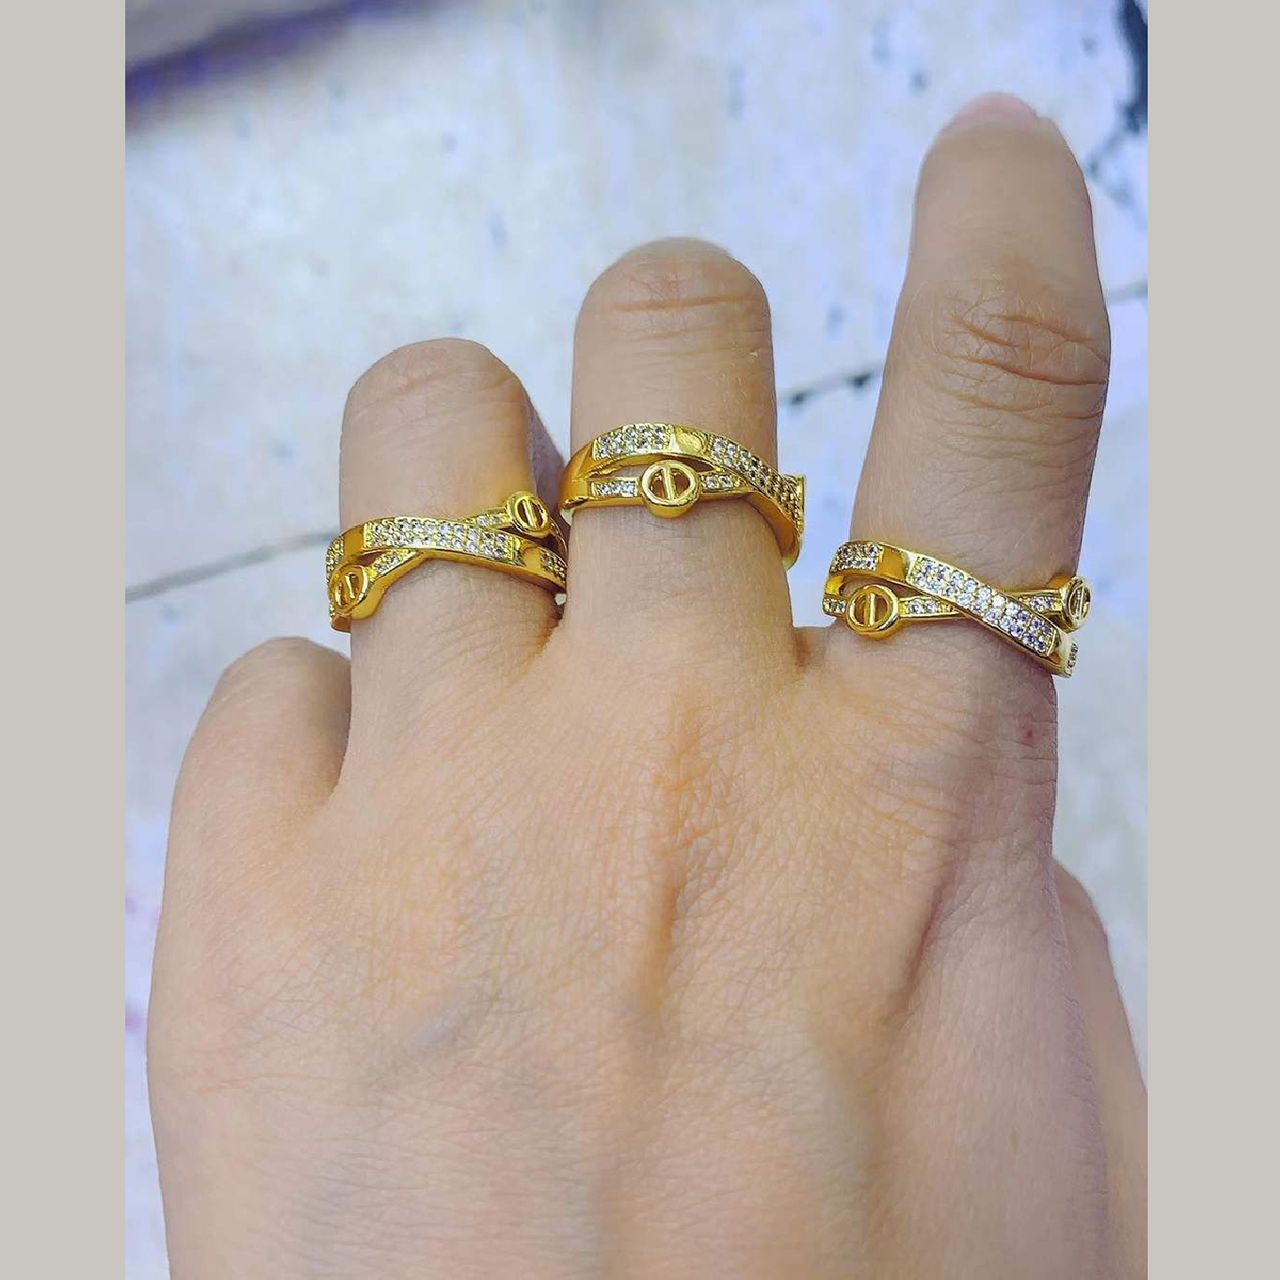 Elegant Gold Finger Ring Designs for Women